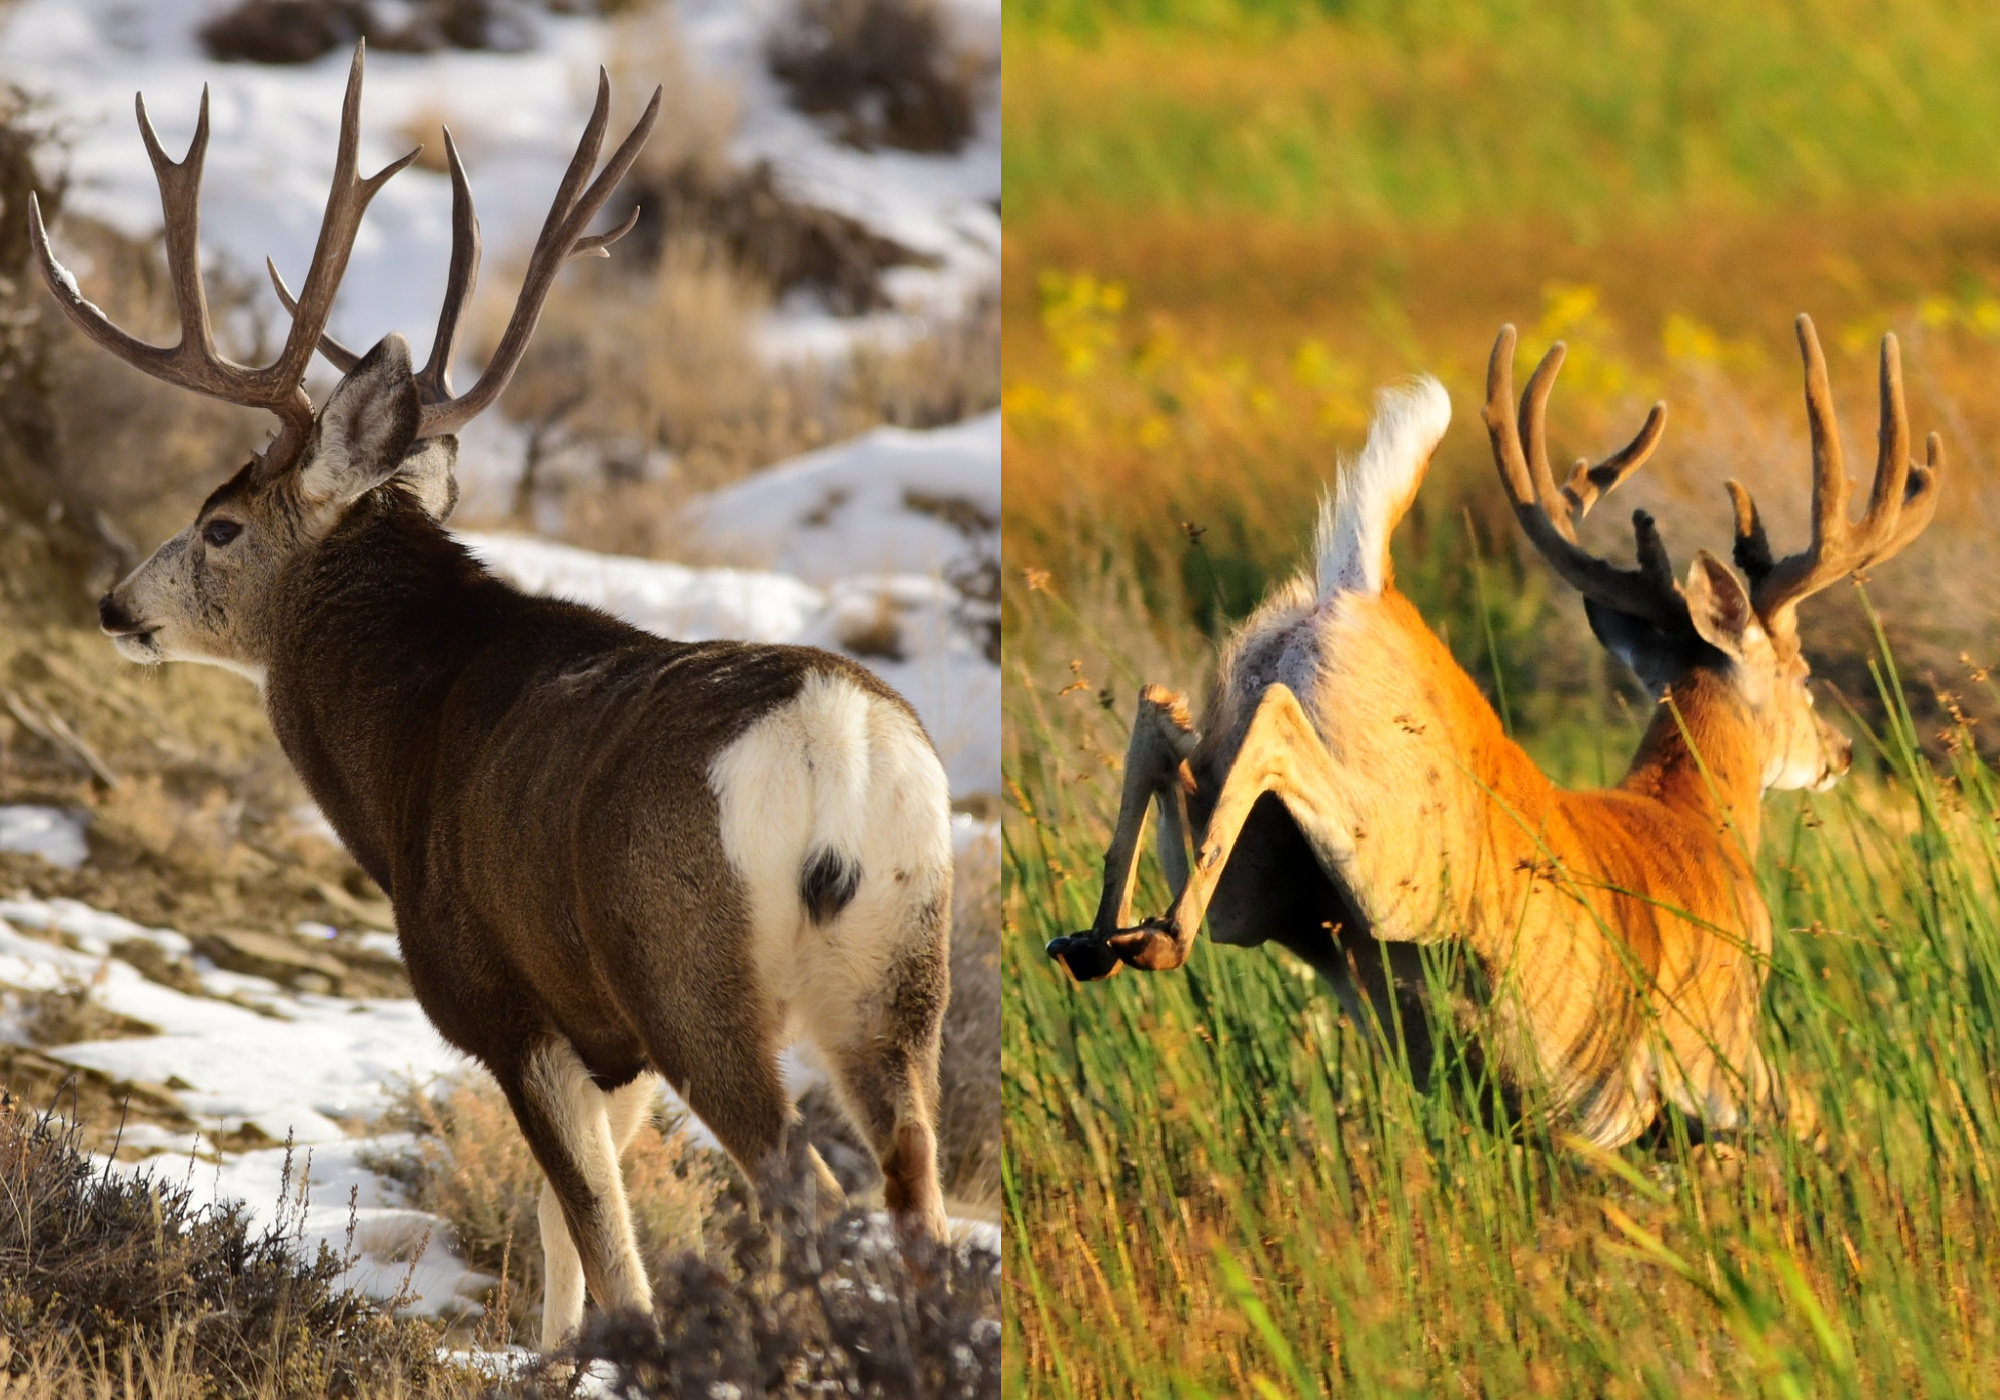 mule deer tail vs whitetail deer tail